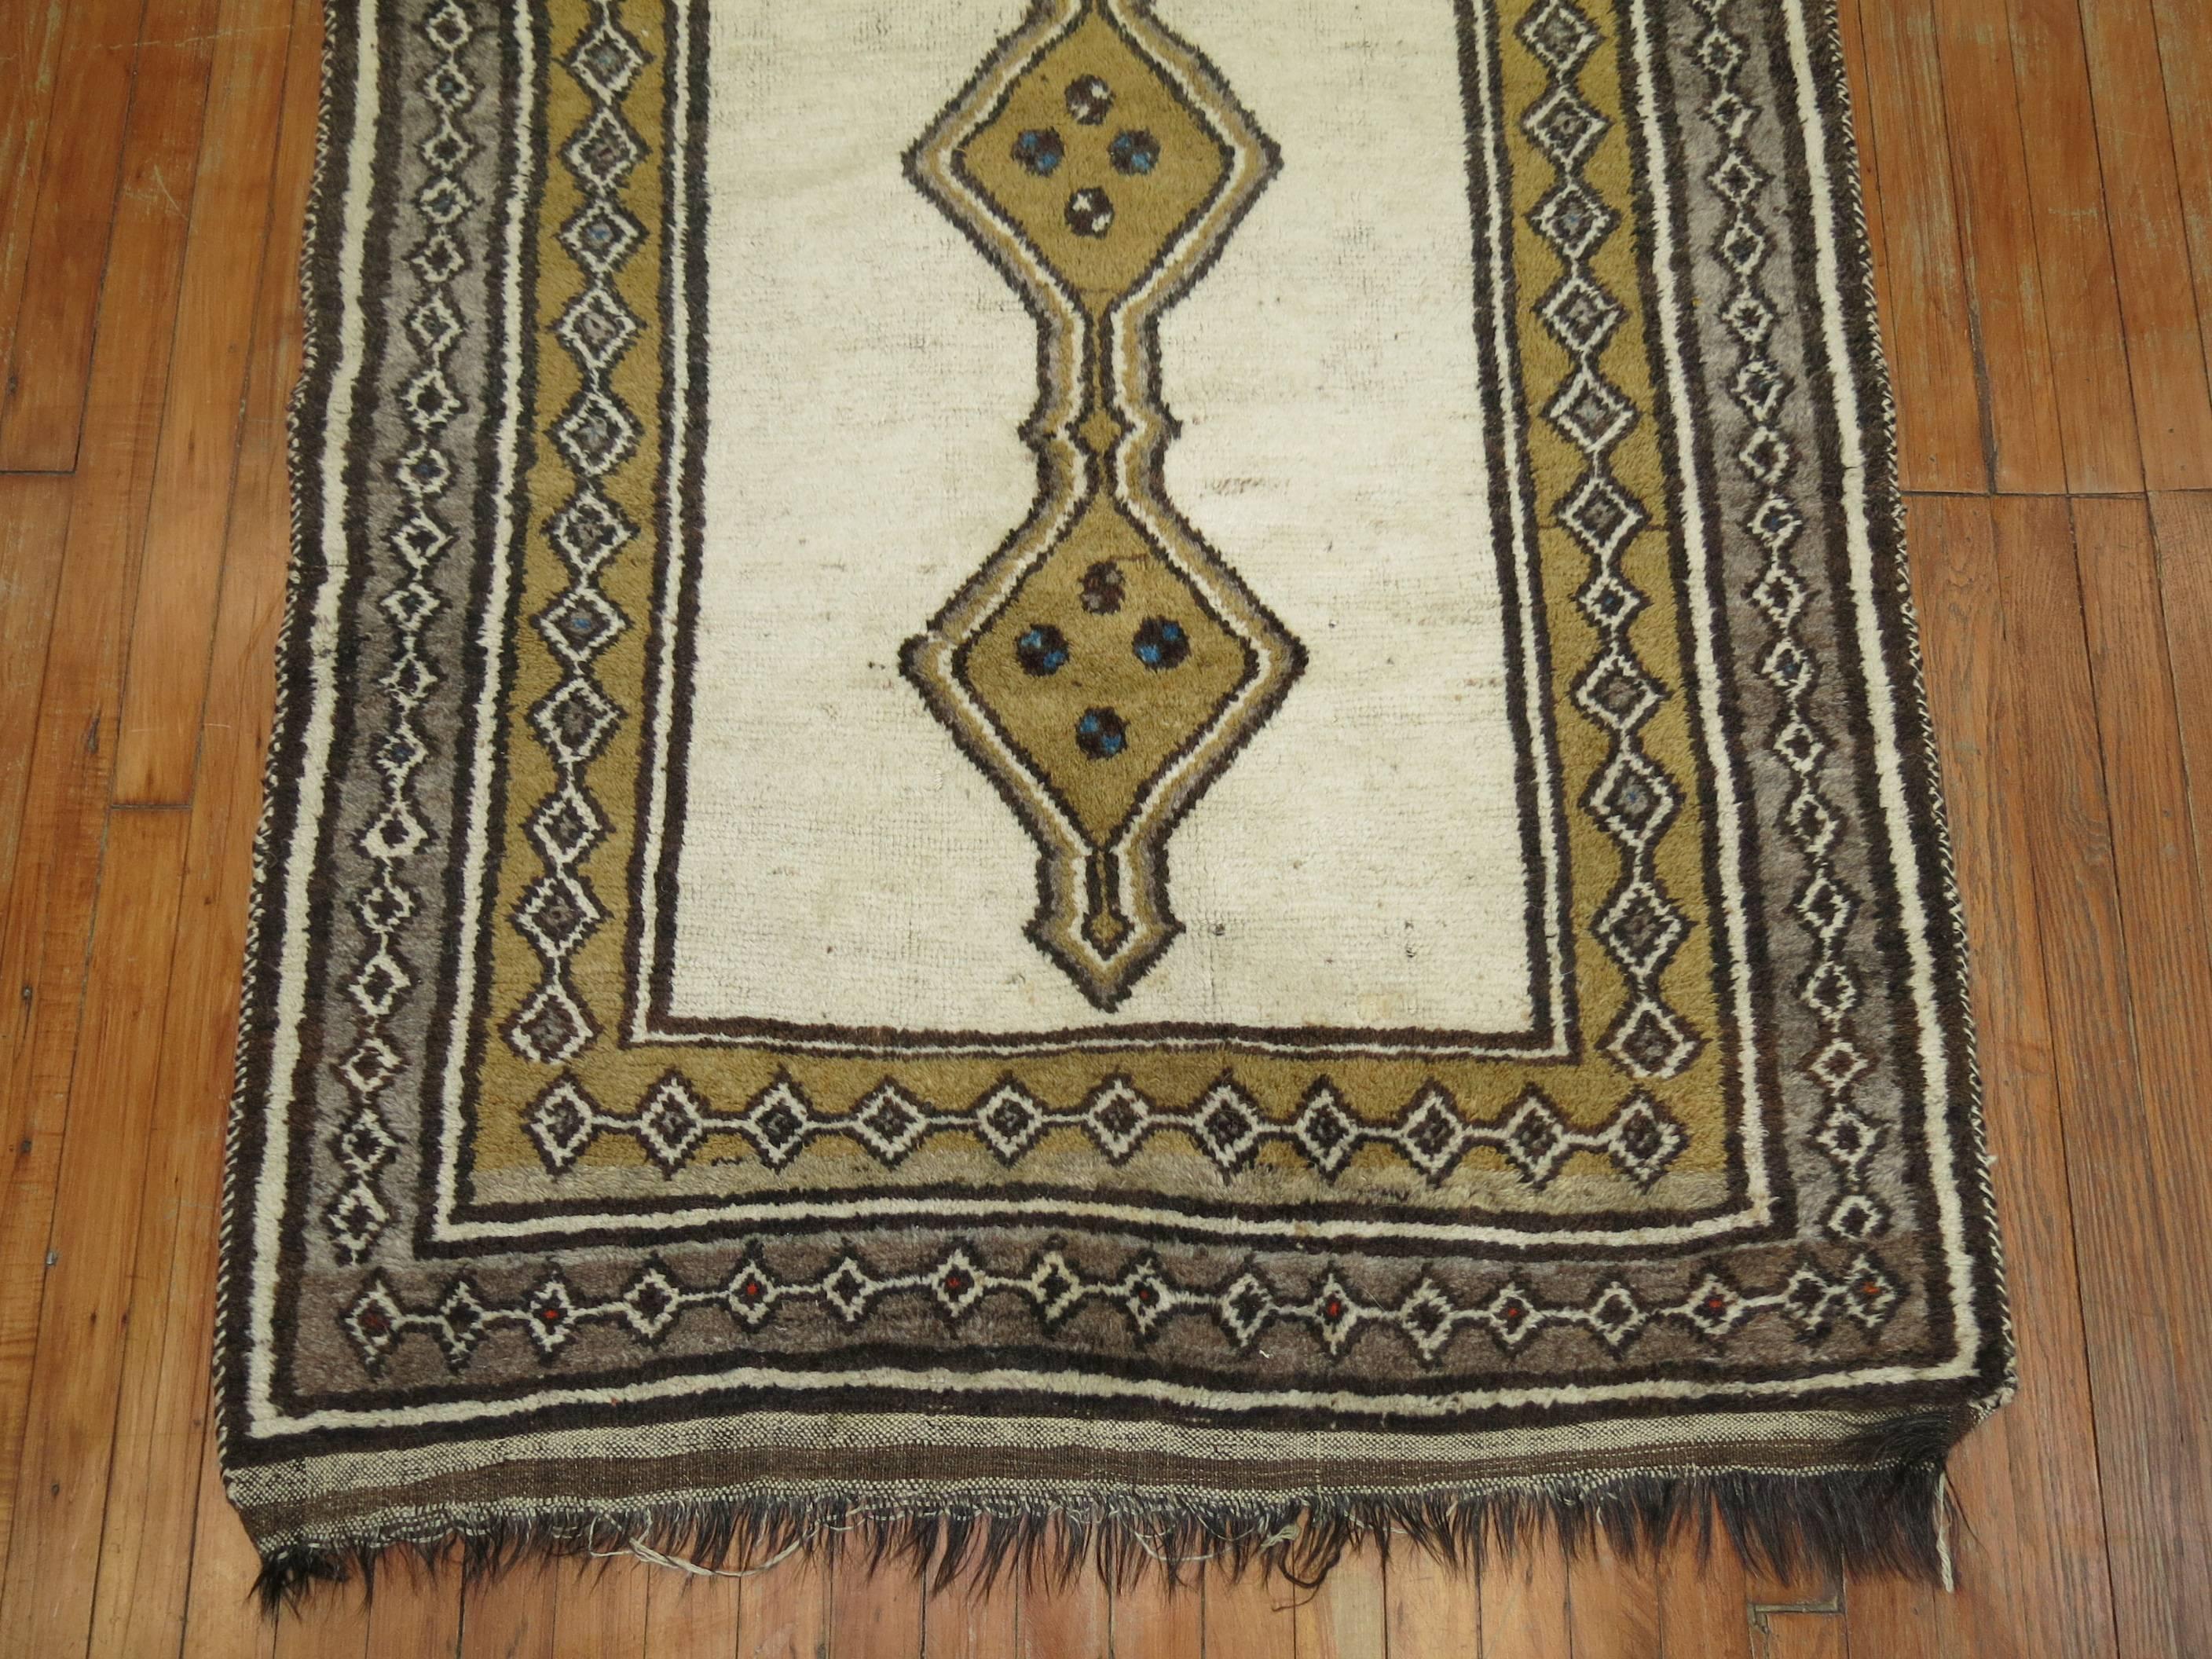 Ein authentischer, einzigartiger, antiker persischer Gabbeh-Teppich in Elfenbein- und Olivgrüntönen.

3'10'' x 6'2''

Persische Gabbeh-Teppiche werden mit besonders hohem Flor und sehr einfachen, grafischen Mustern hergestellt, die sich auf die